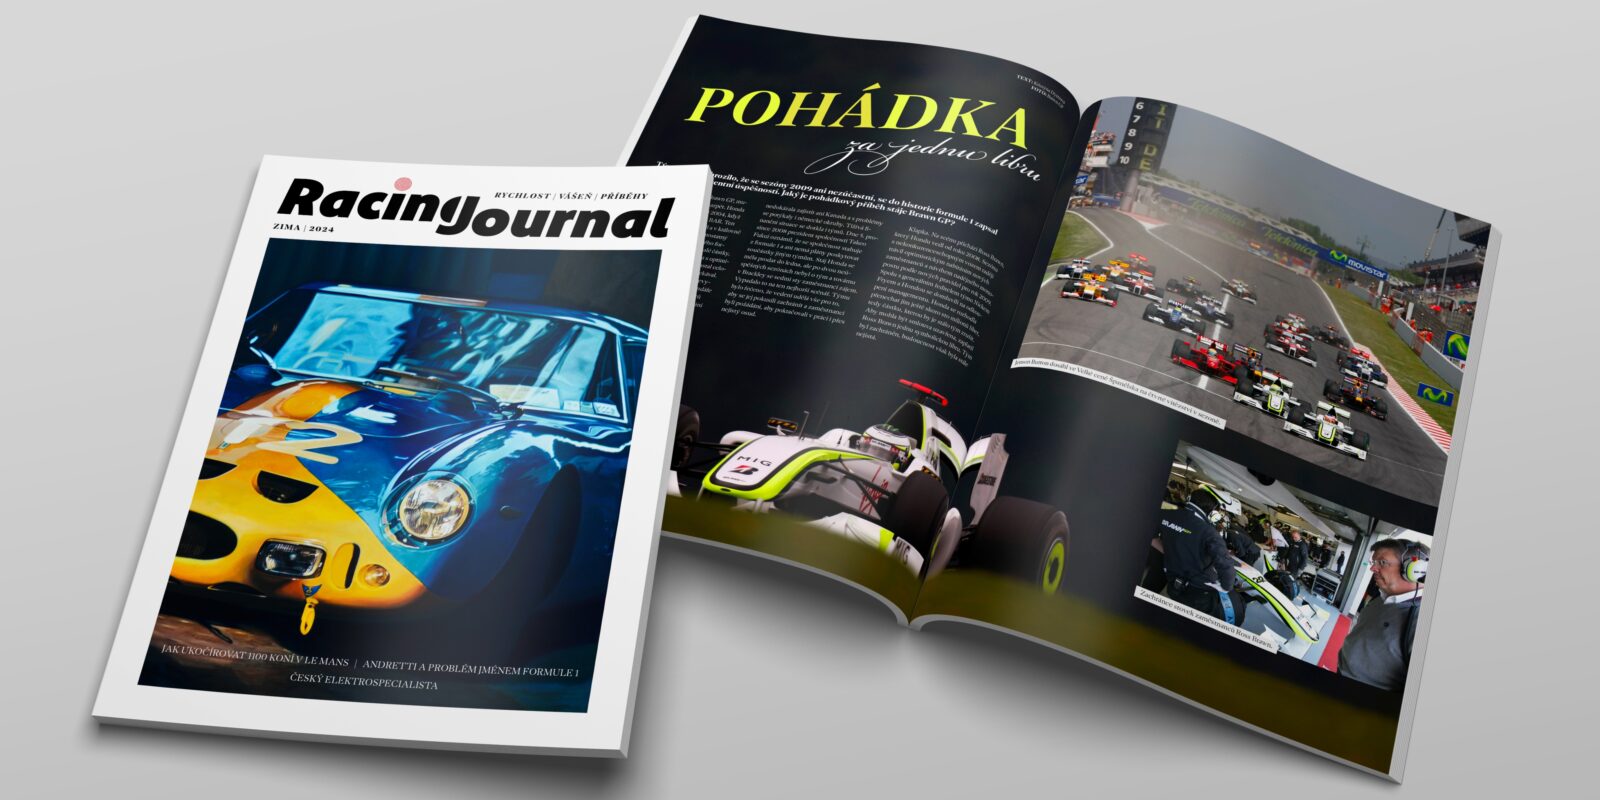 Vychází druhé číslo časopisu Racing Journal